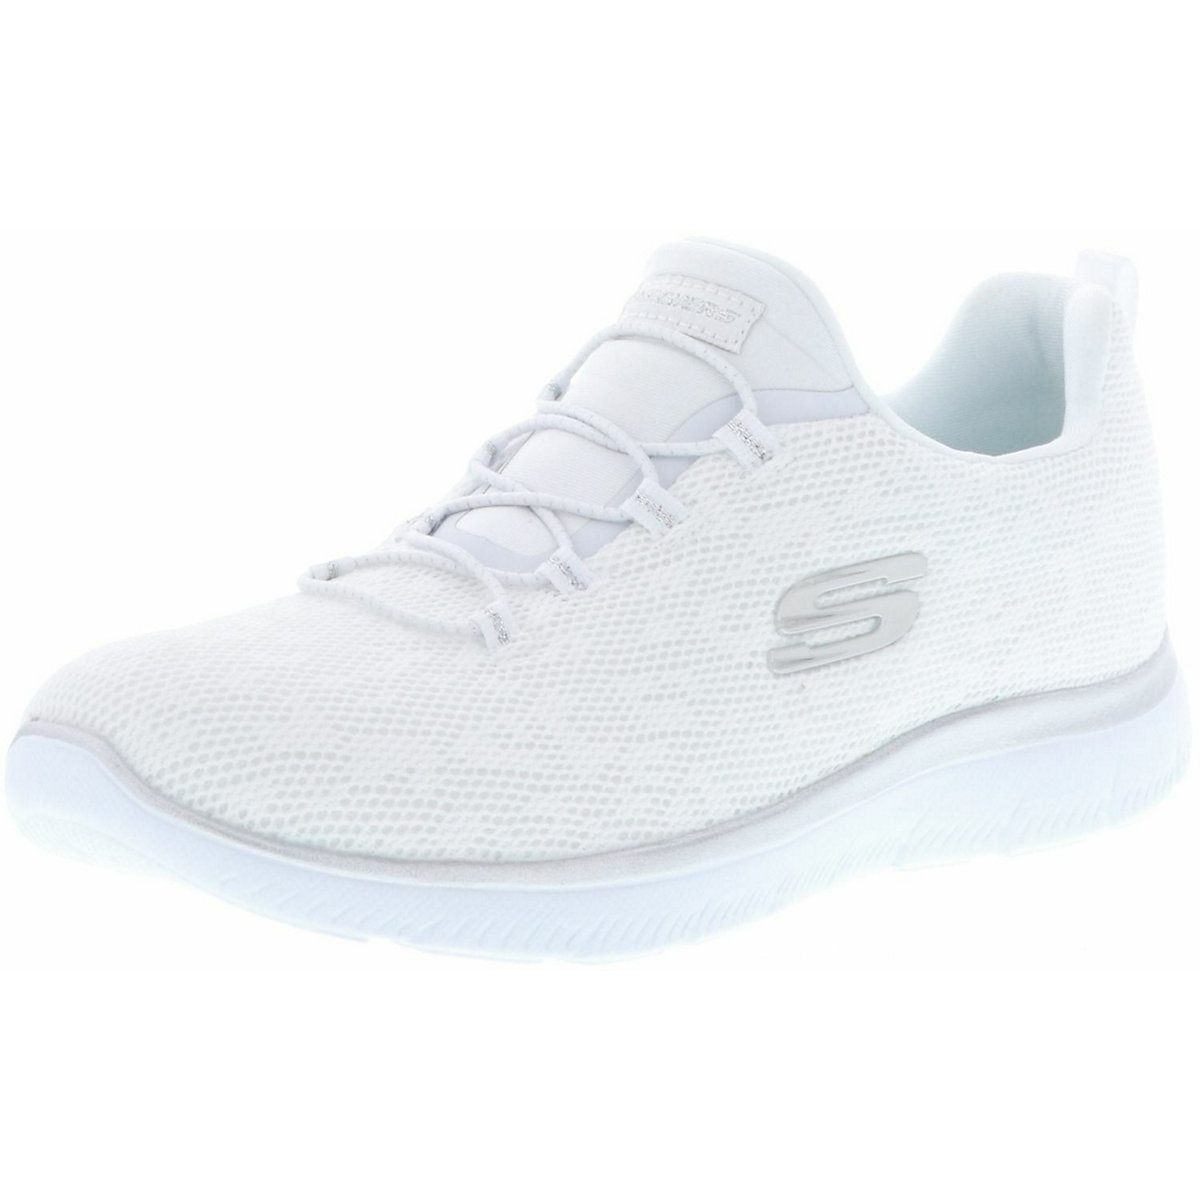 SKECHERS SKECHERS 149037/WSL Summits-Leopard Spot Damen Sneaker weiß/silber Sneakers Low weiß